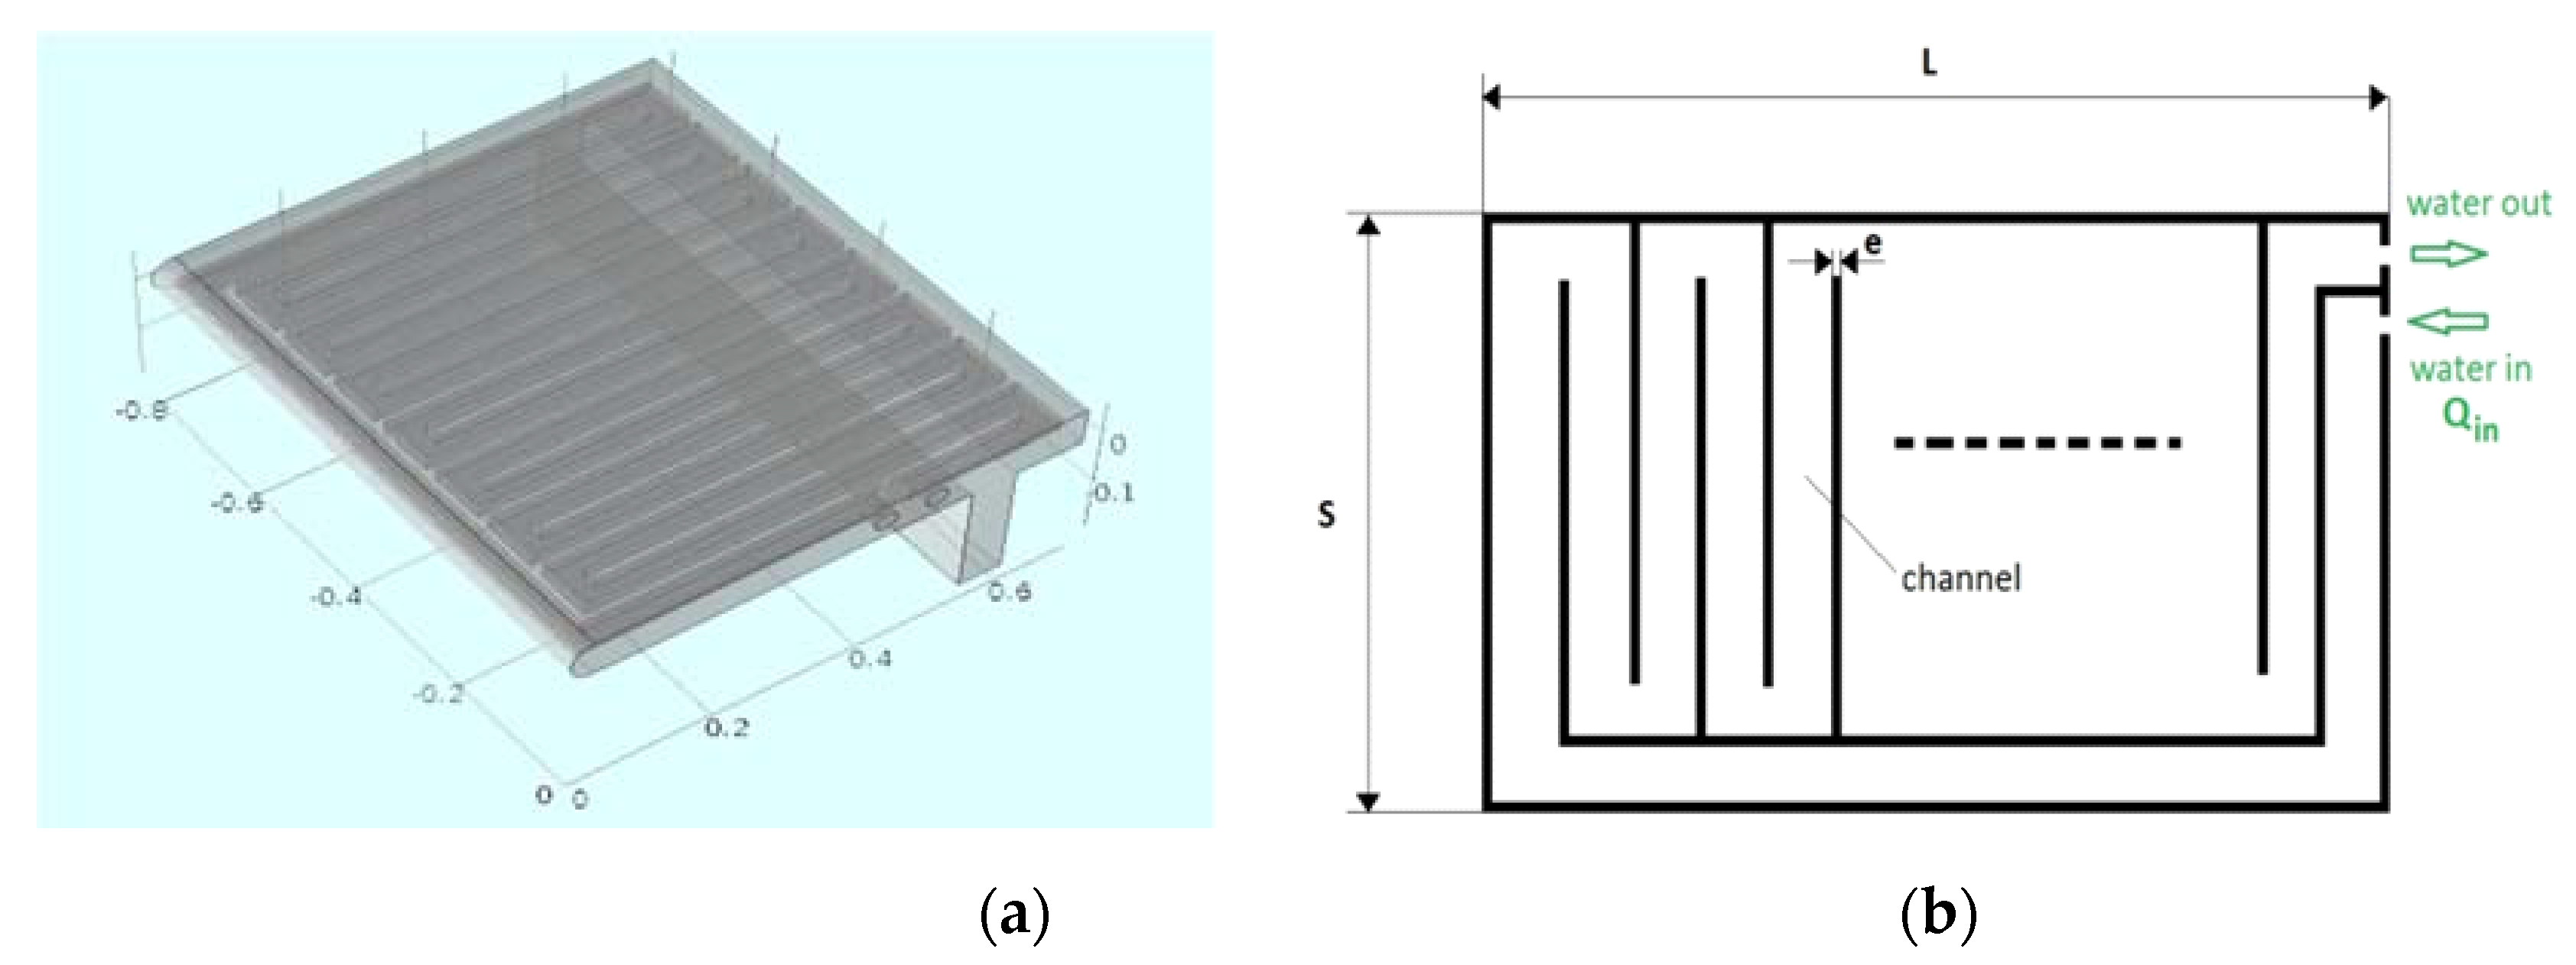 Cùng khám phá mô hình nhiệt của cổng với chúng tôi để hiểu thêm về quá trình điều khiển nhiệt độ. Hình ảnh minh họa sẽ giúp bạn dễ dàng hình dung ra cách hoạt động của cổng.